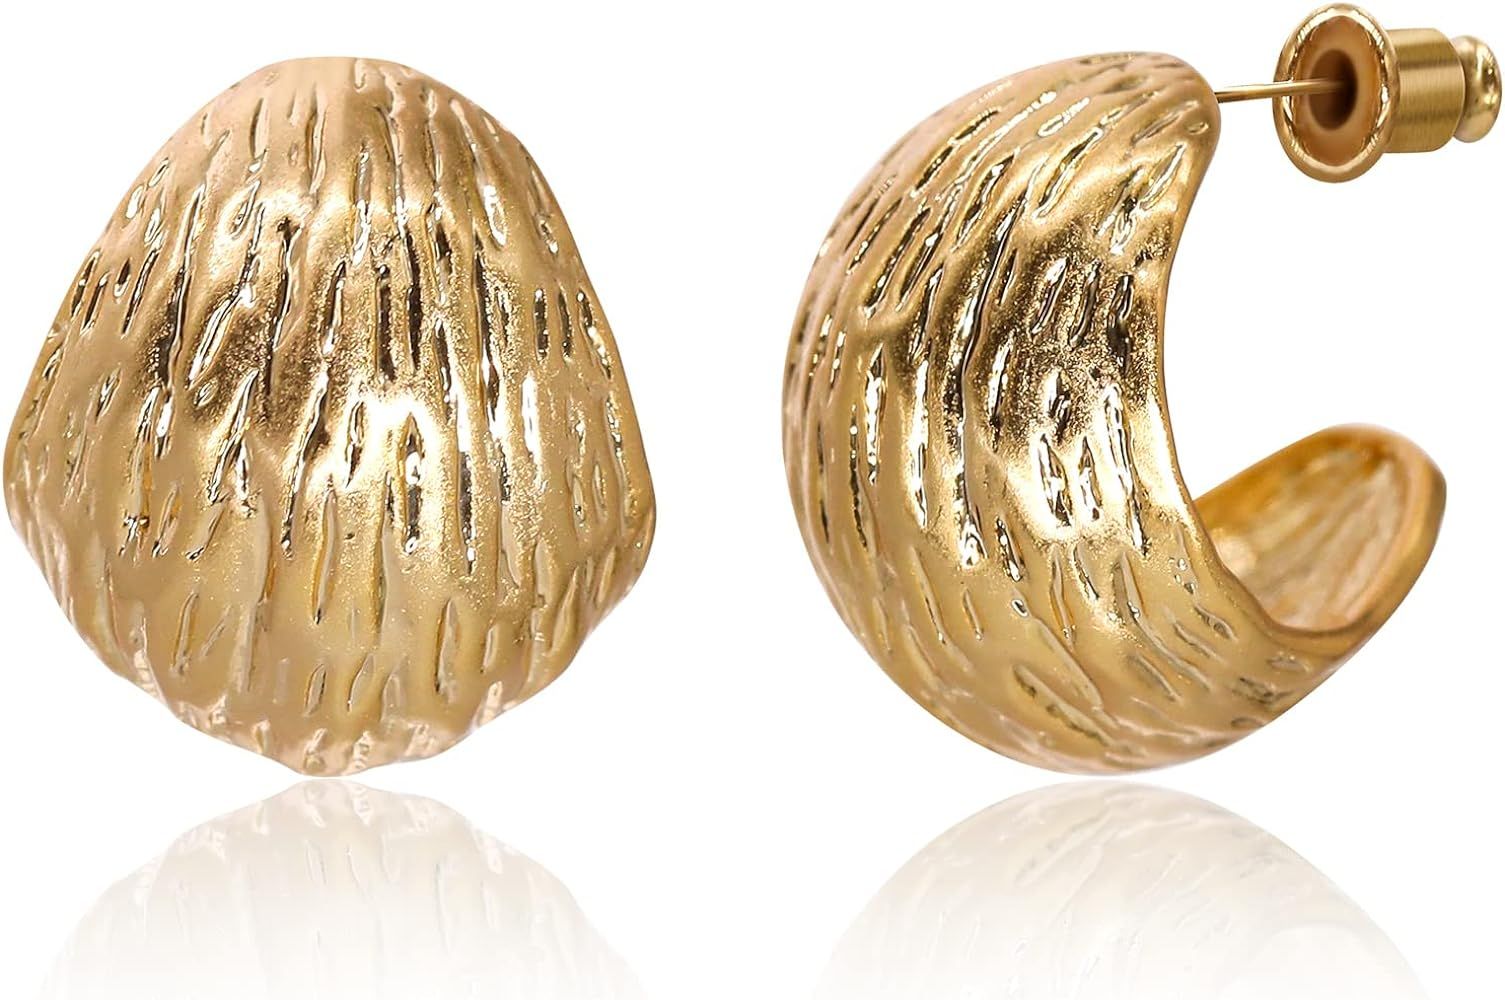 KITTYOUTH Chunky Hoop Earrings for Women Gold/Silver Plated Lightweight Open Hoop Earrings Trendy Hu | Amazon (US)